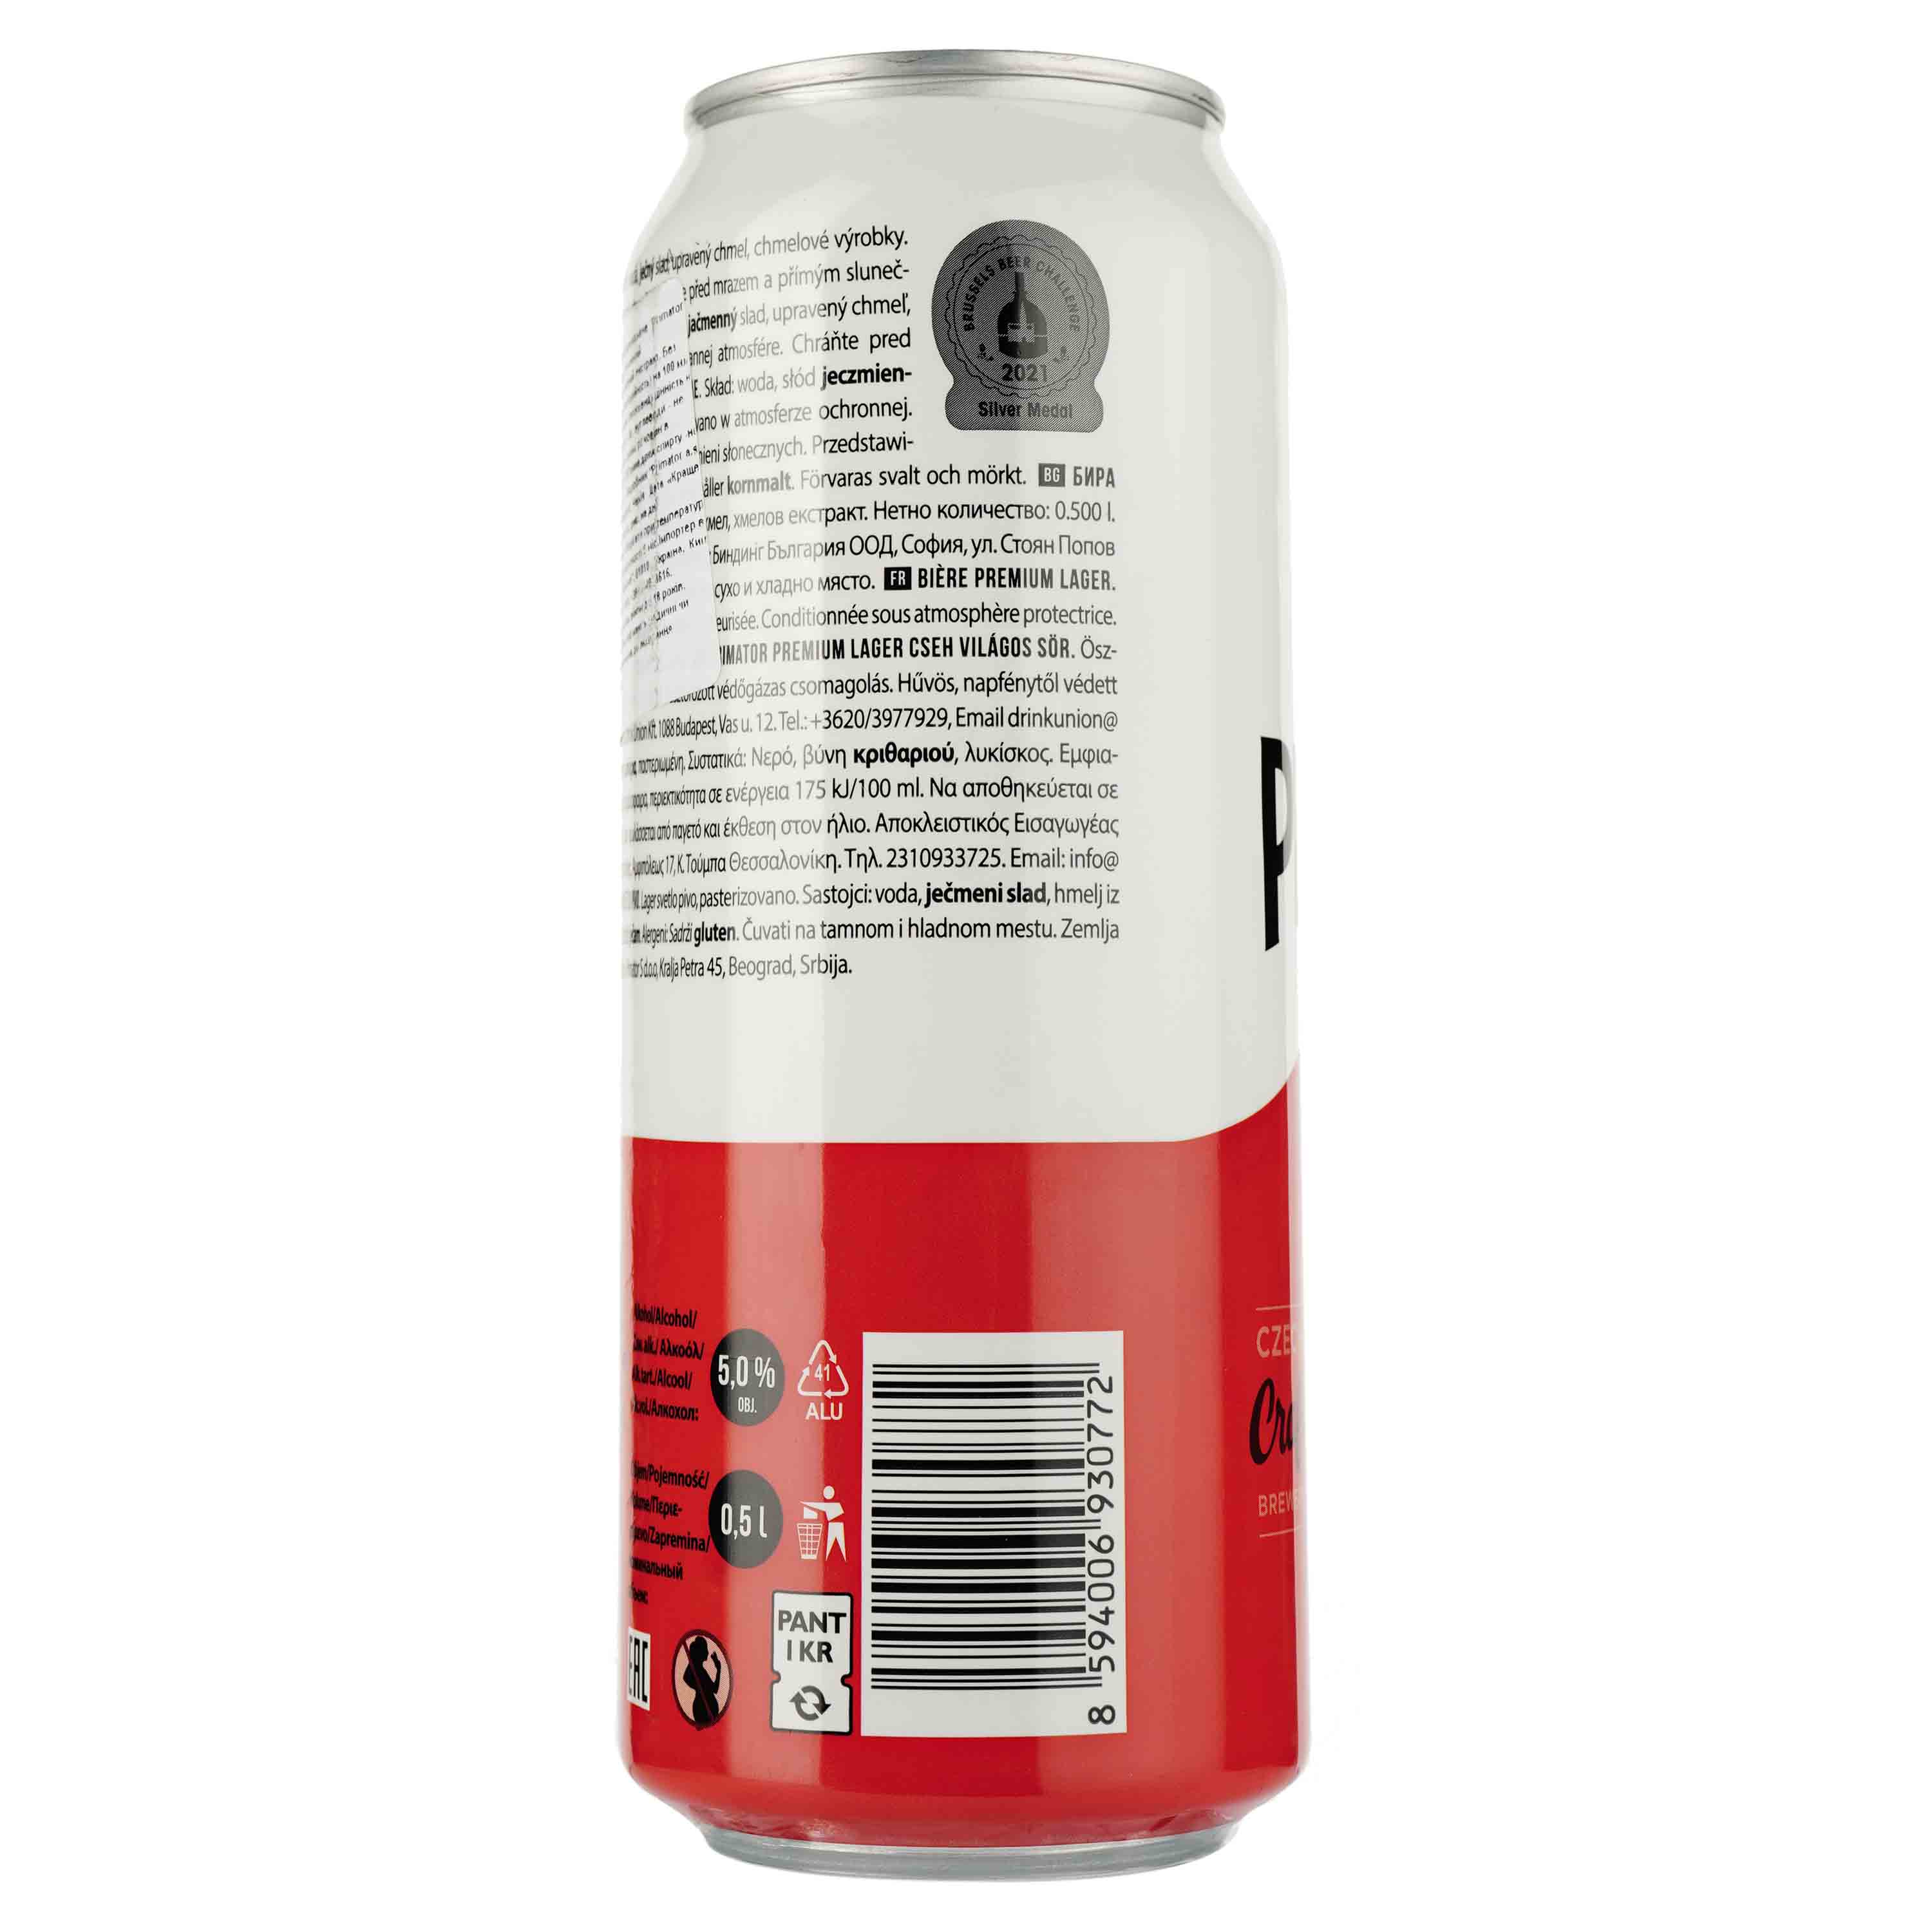 Пиво Primator Premium светлое, 5%, ж/б, 0.5 л - фото 2